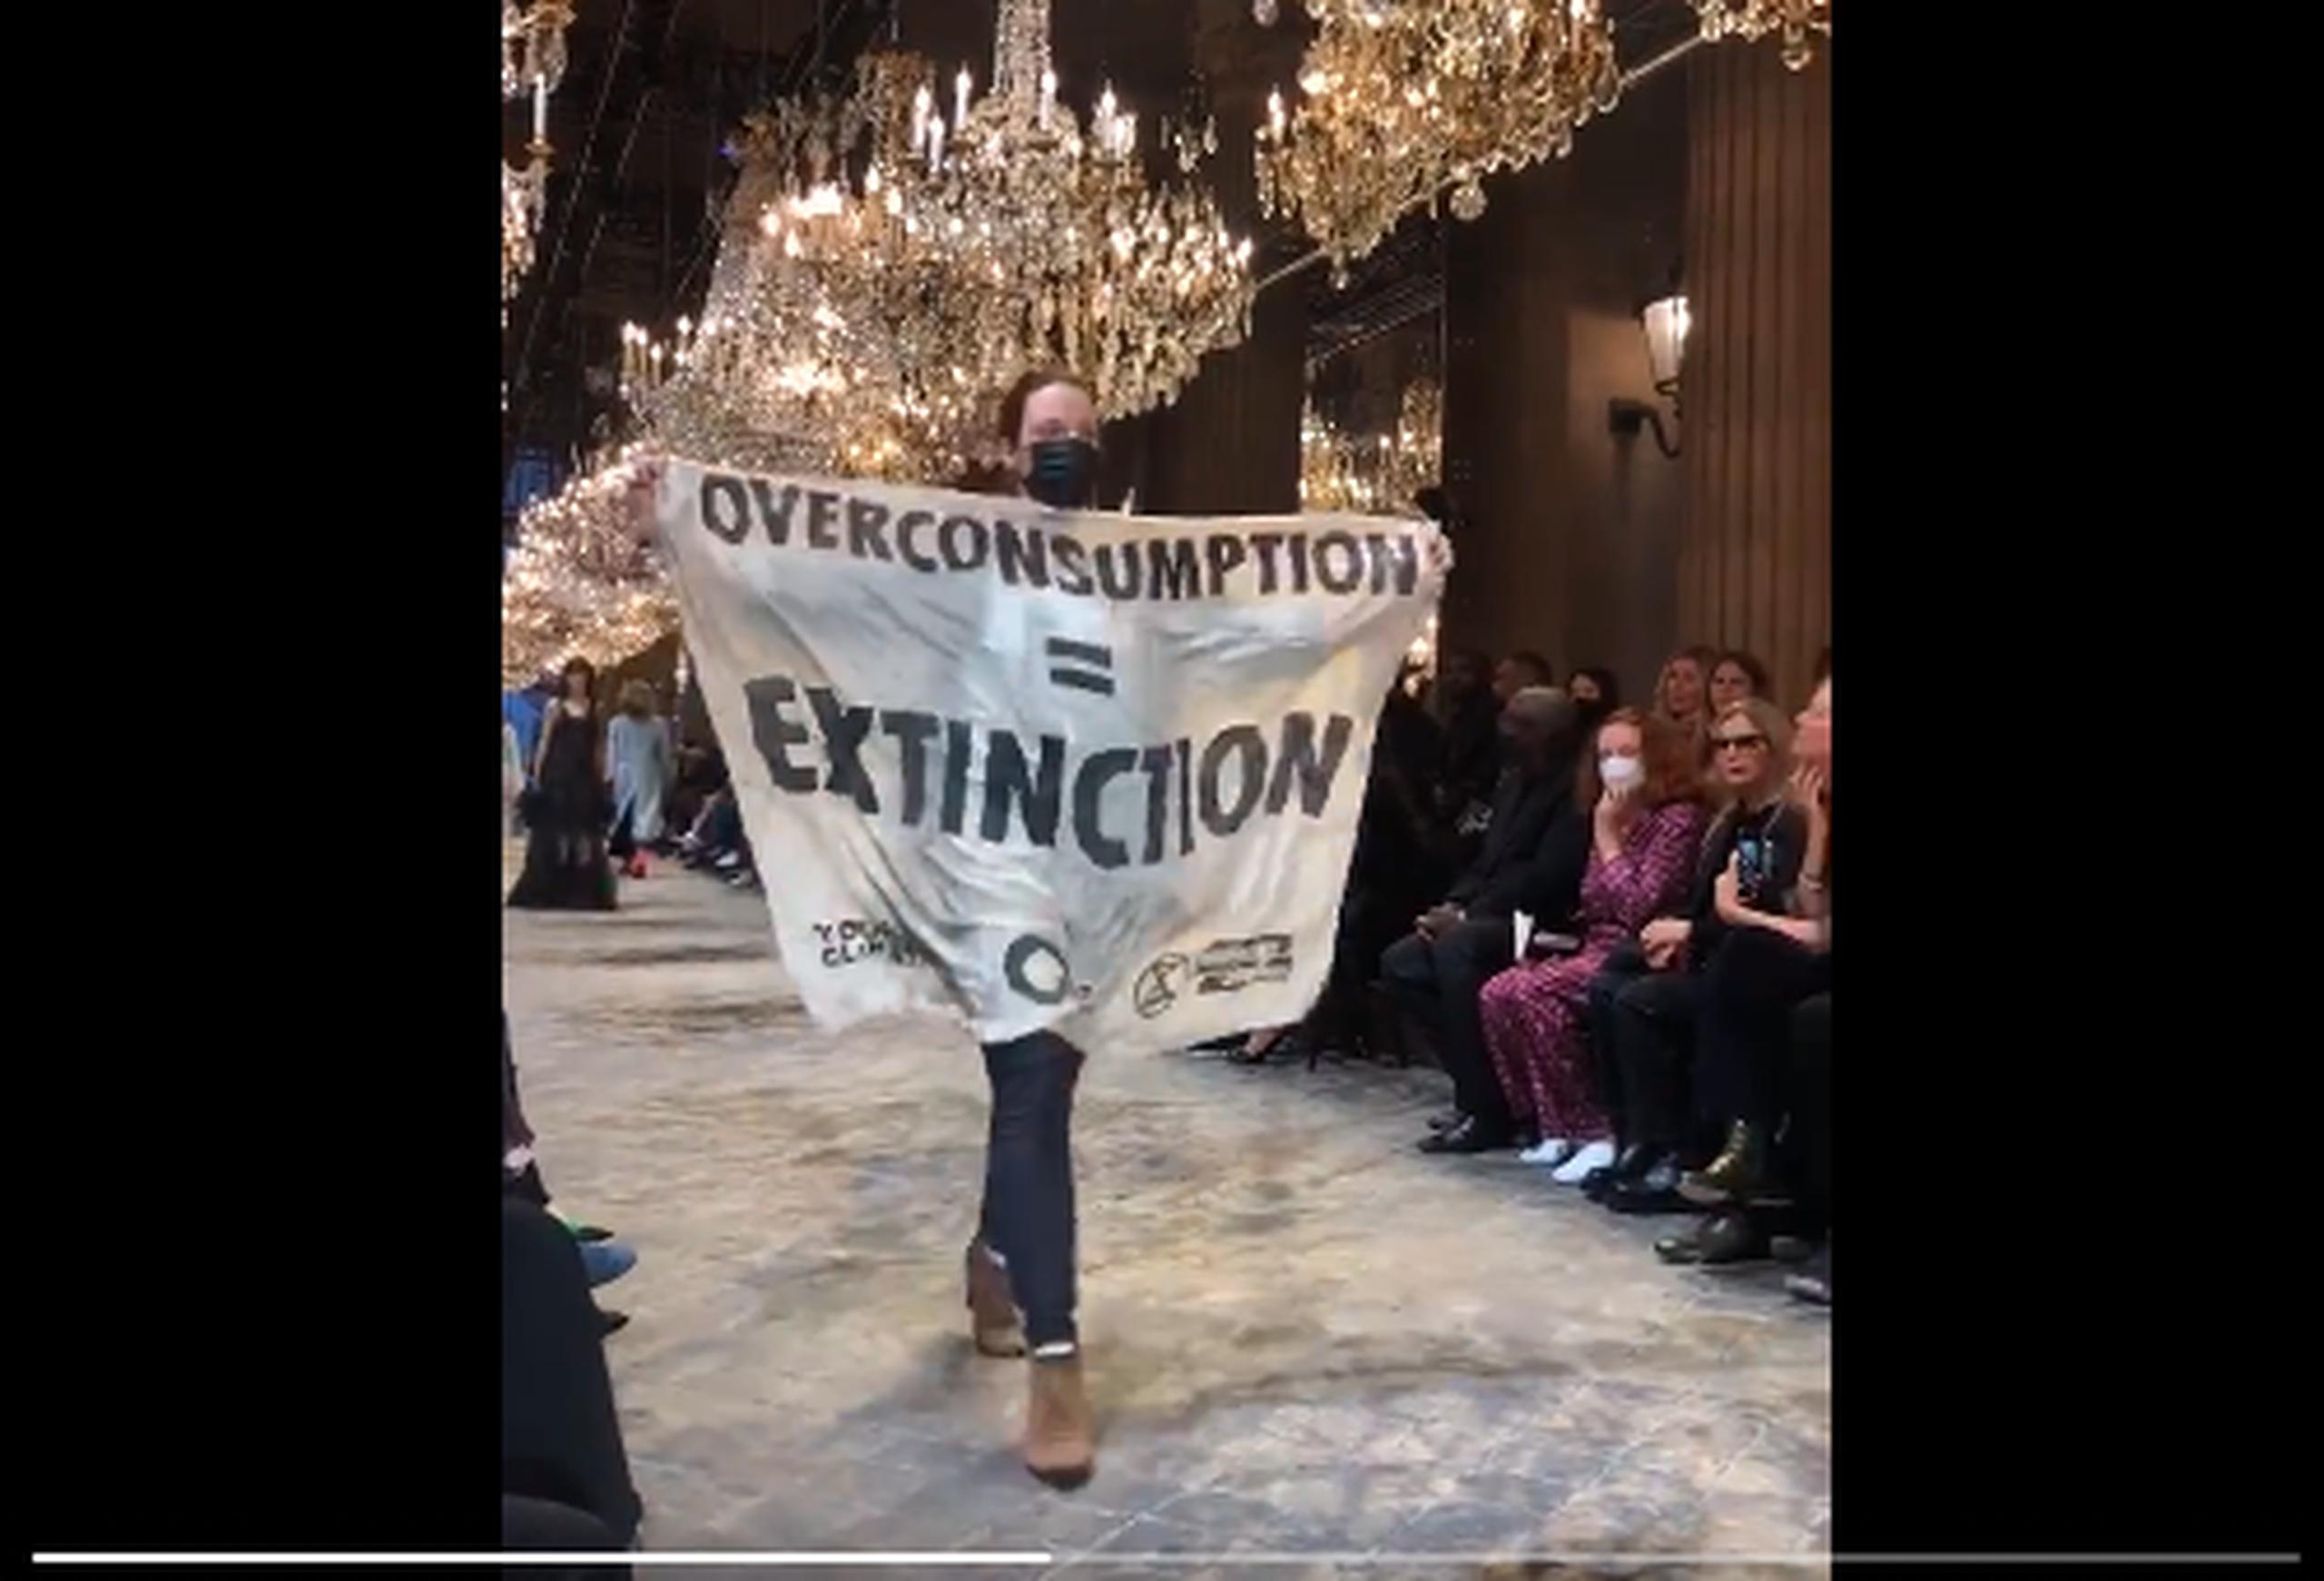 Protesta en desfile de Louis Vuitton; Fashion Week París